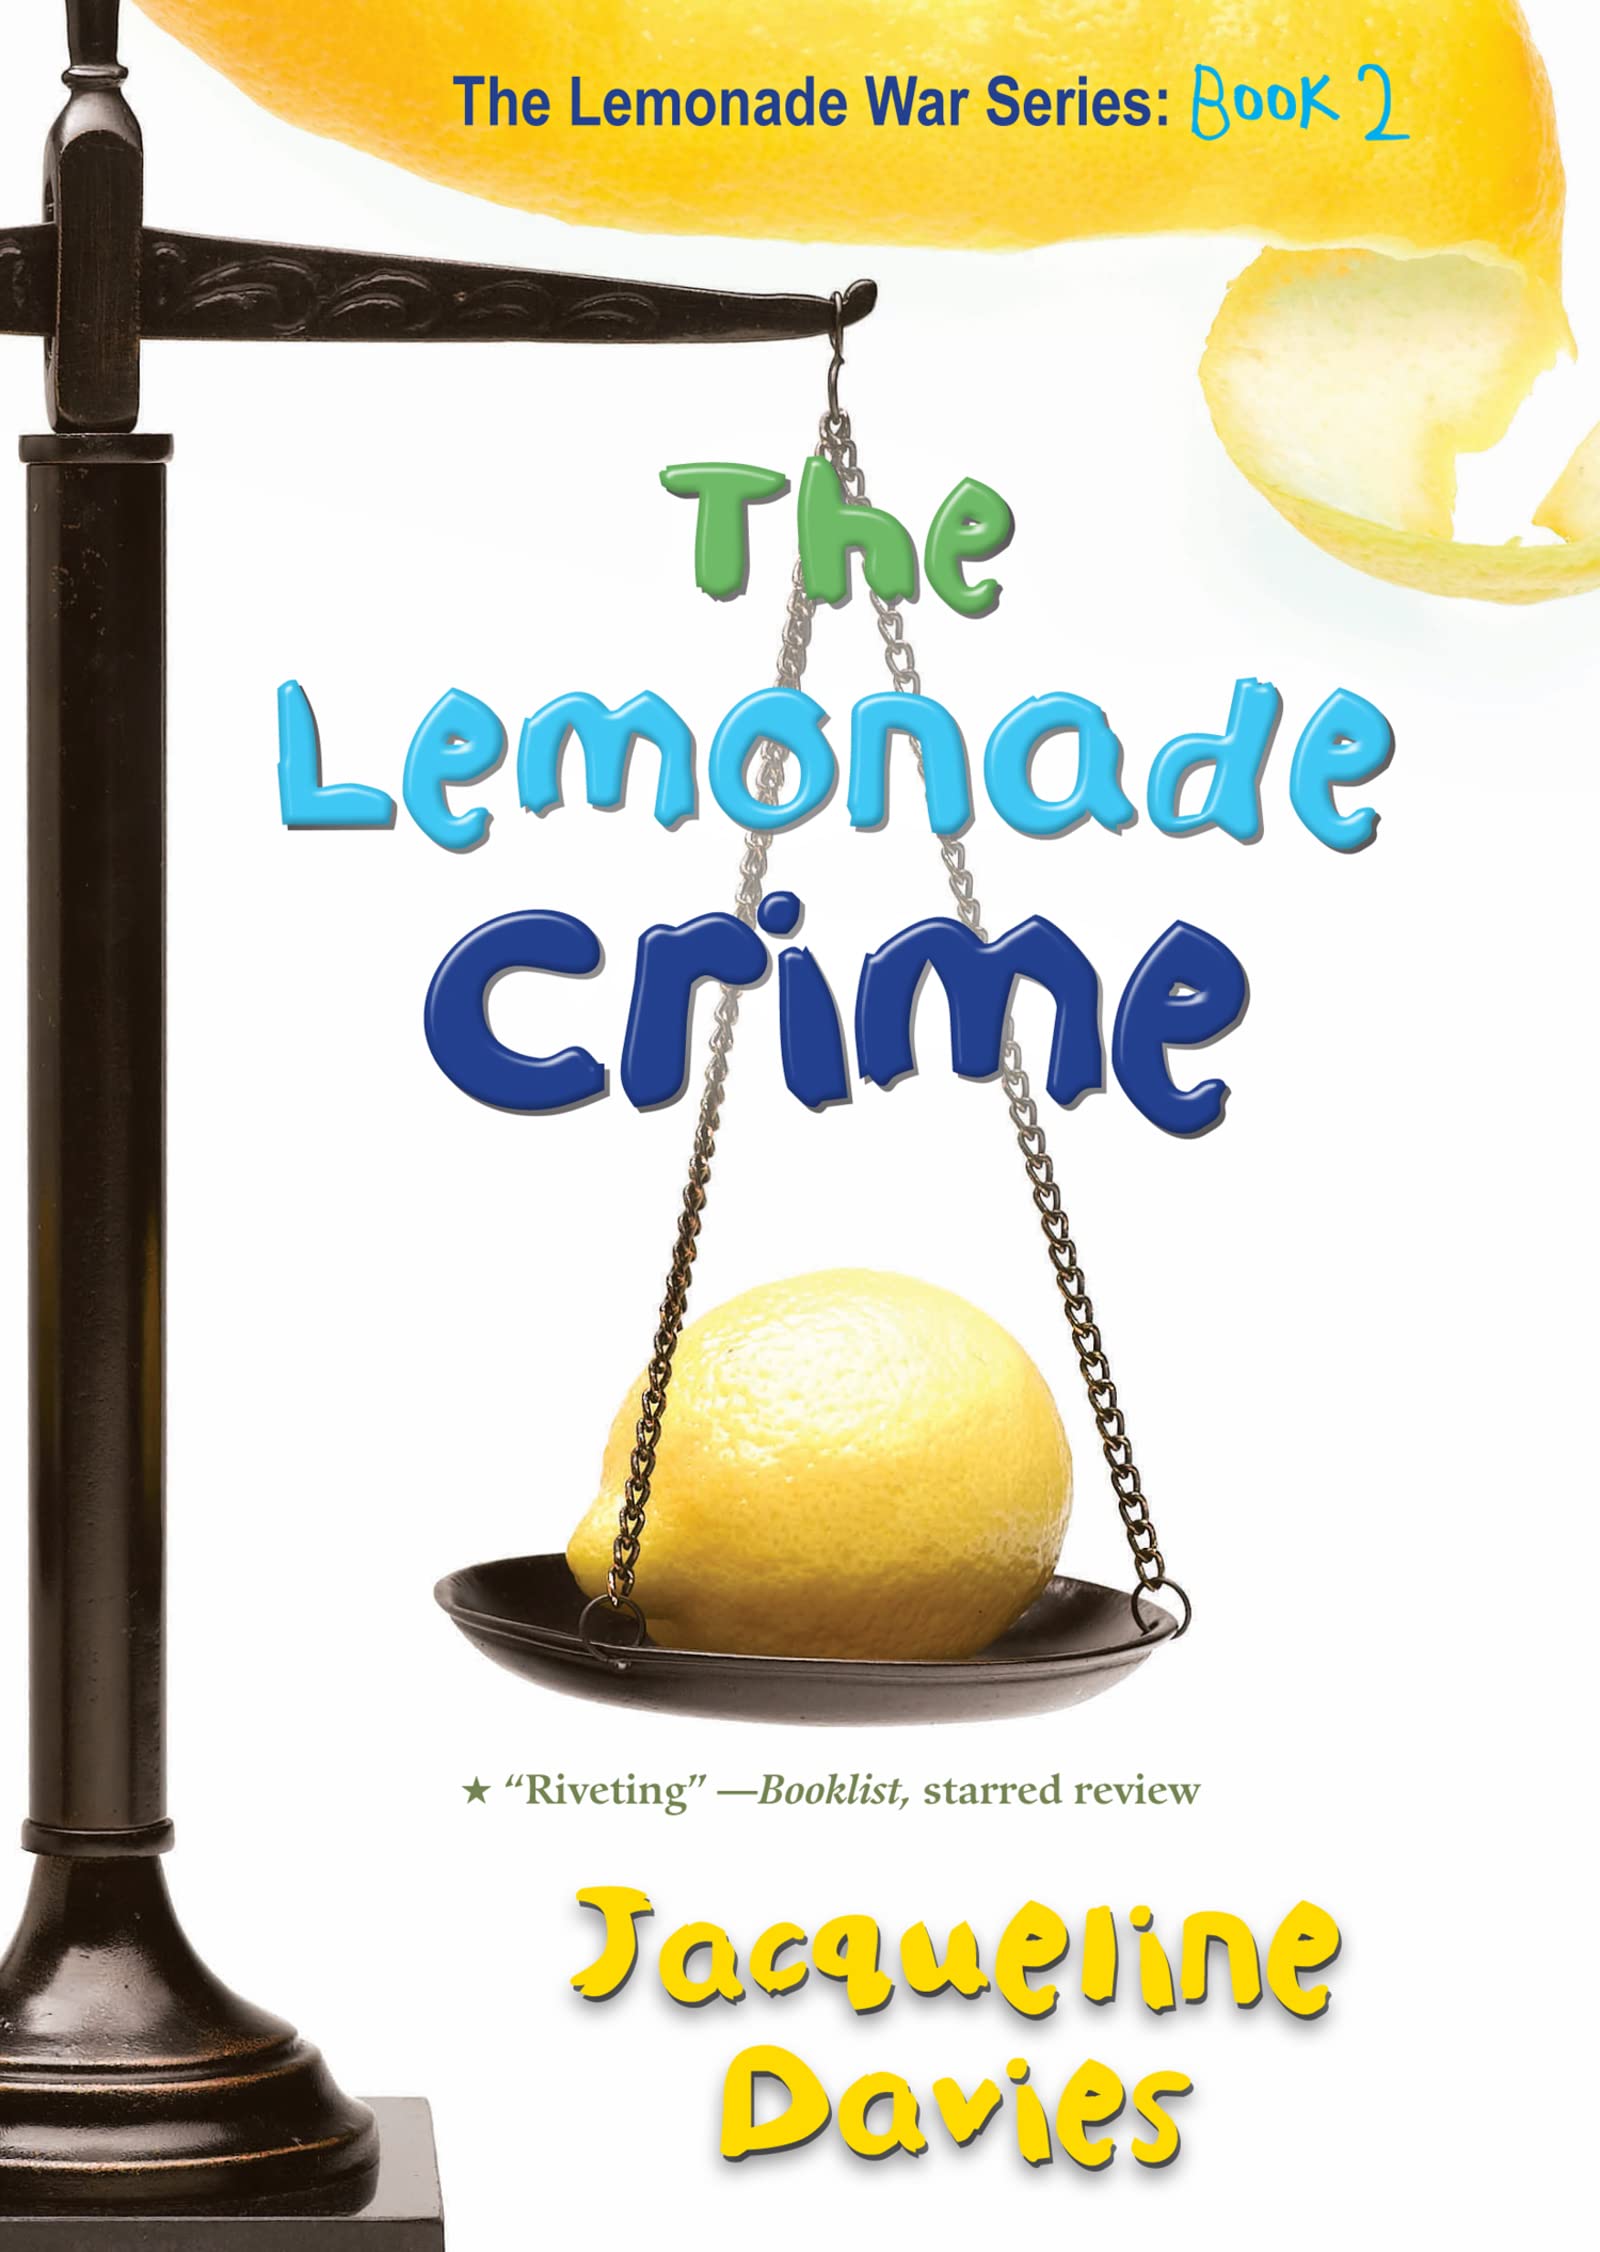 (The)lemonade crime